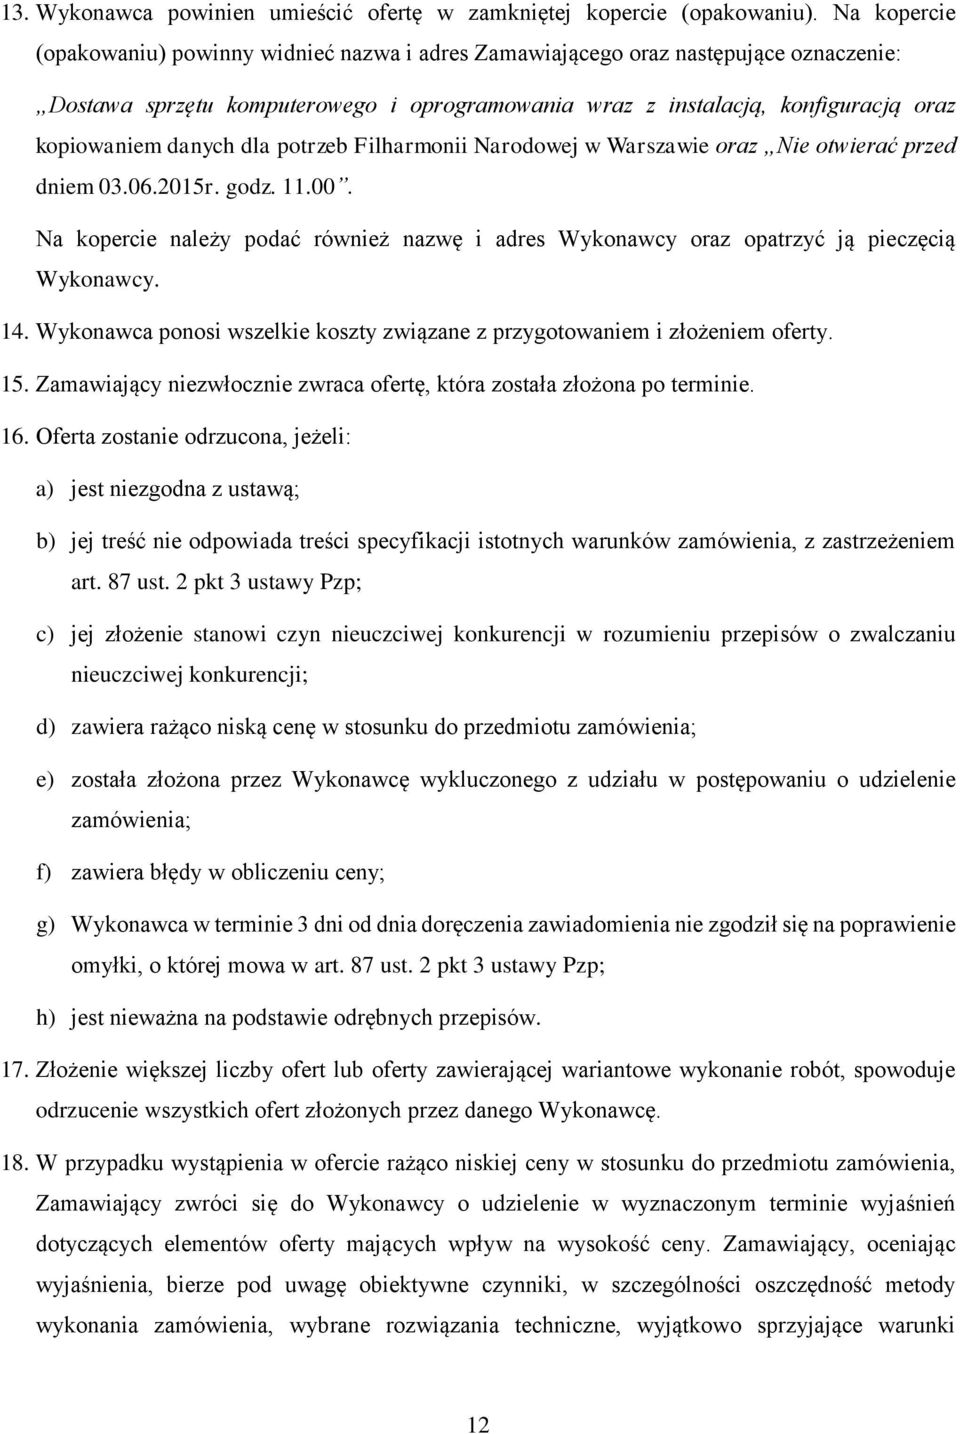 danych dla potrzeb Filharmonii Narodowej w Warszawie oraz Nie otwierać przed dniem 03.06.2015r. godz. 11.00.